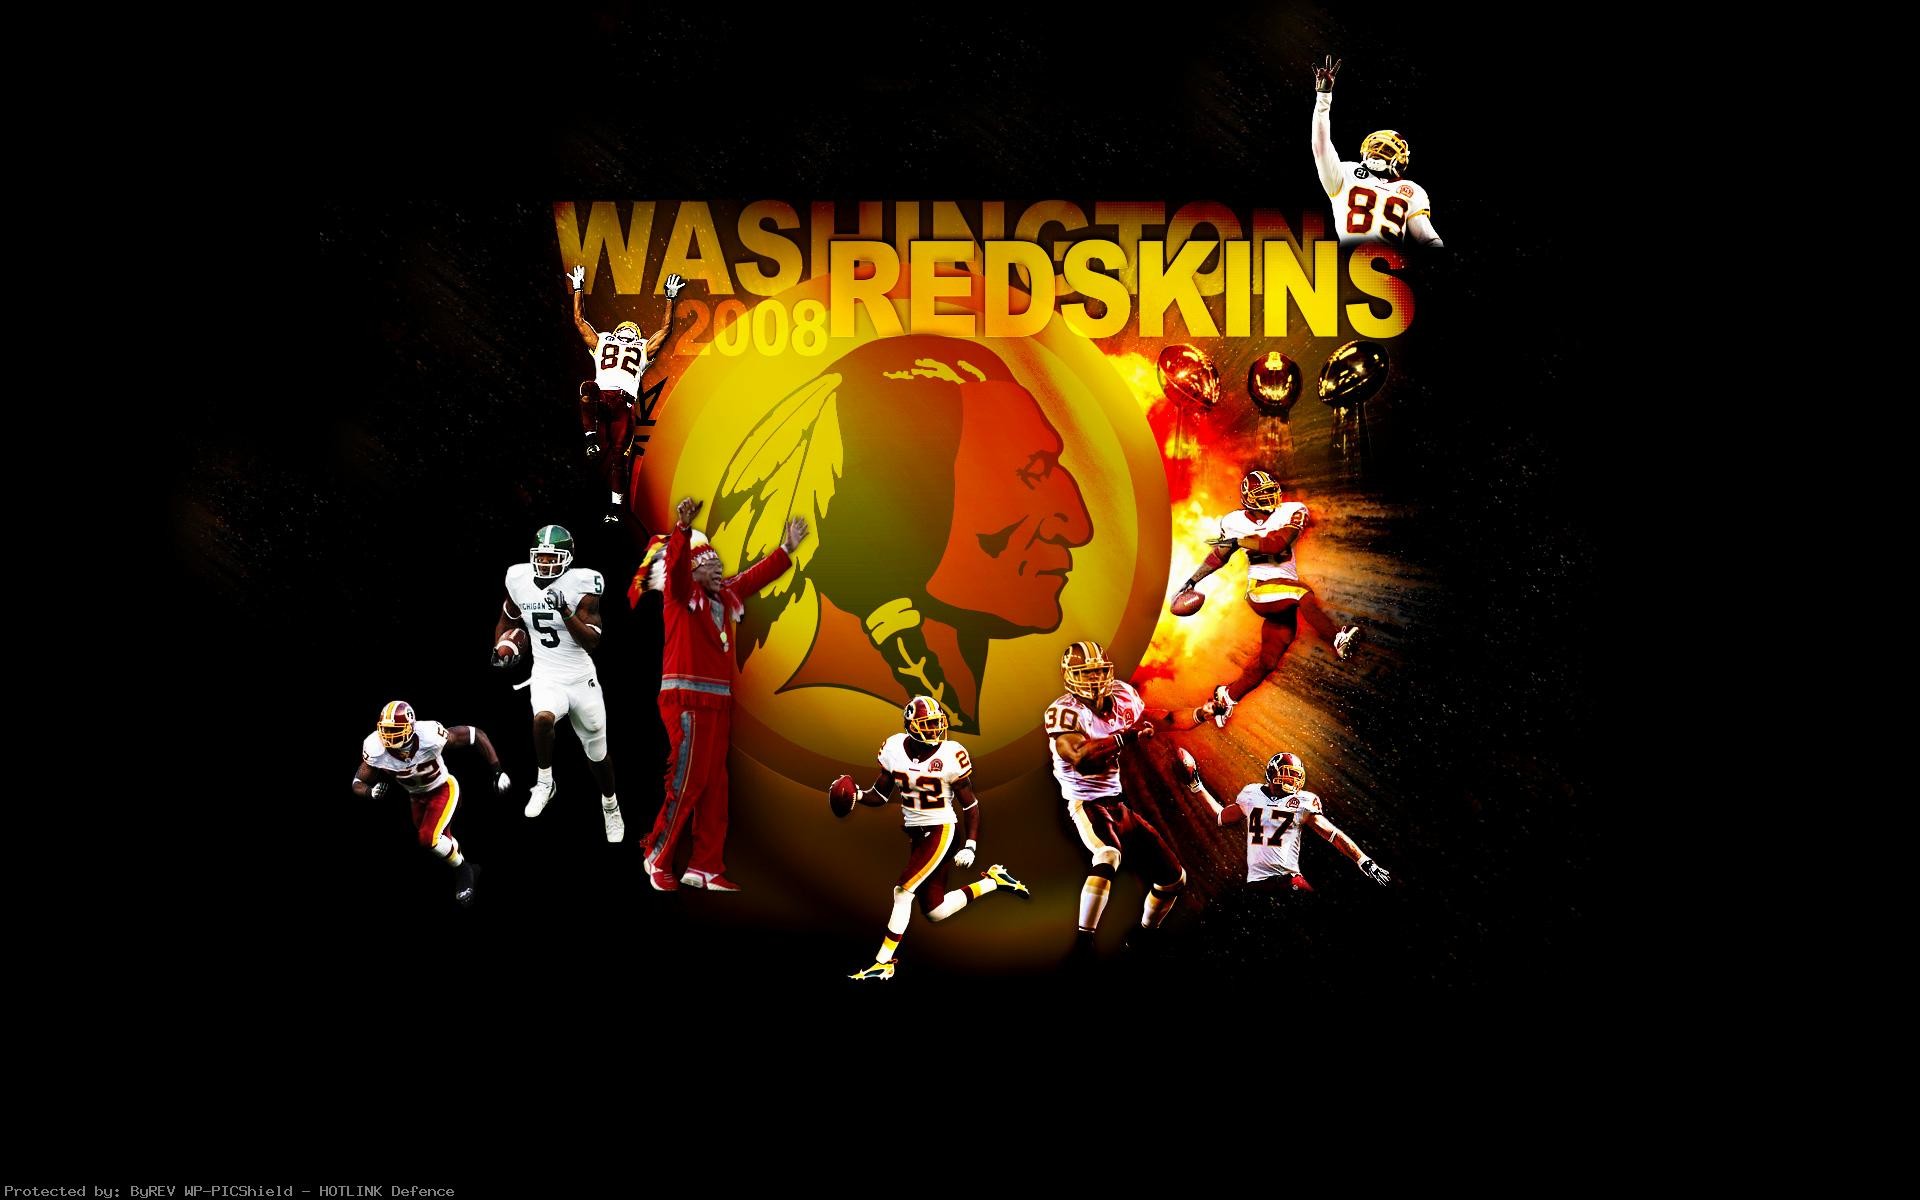 Redskins Wallpaper In 3d Image